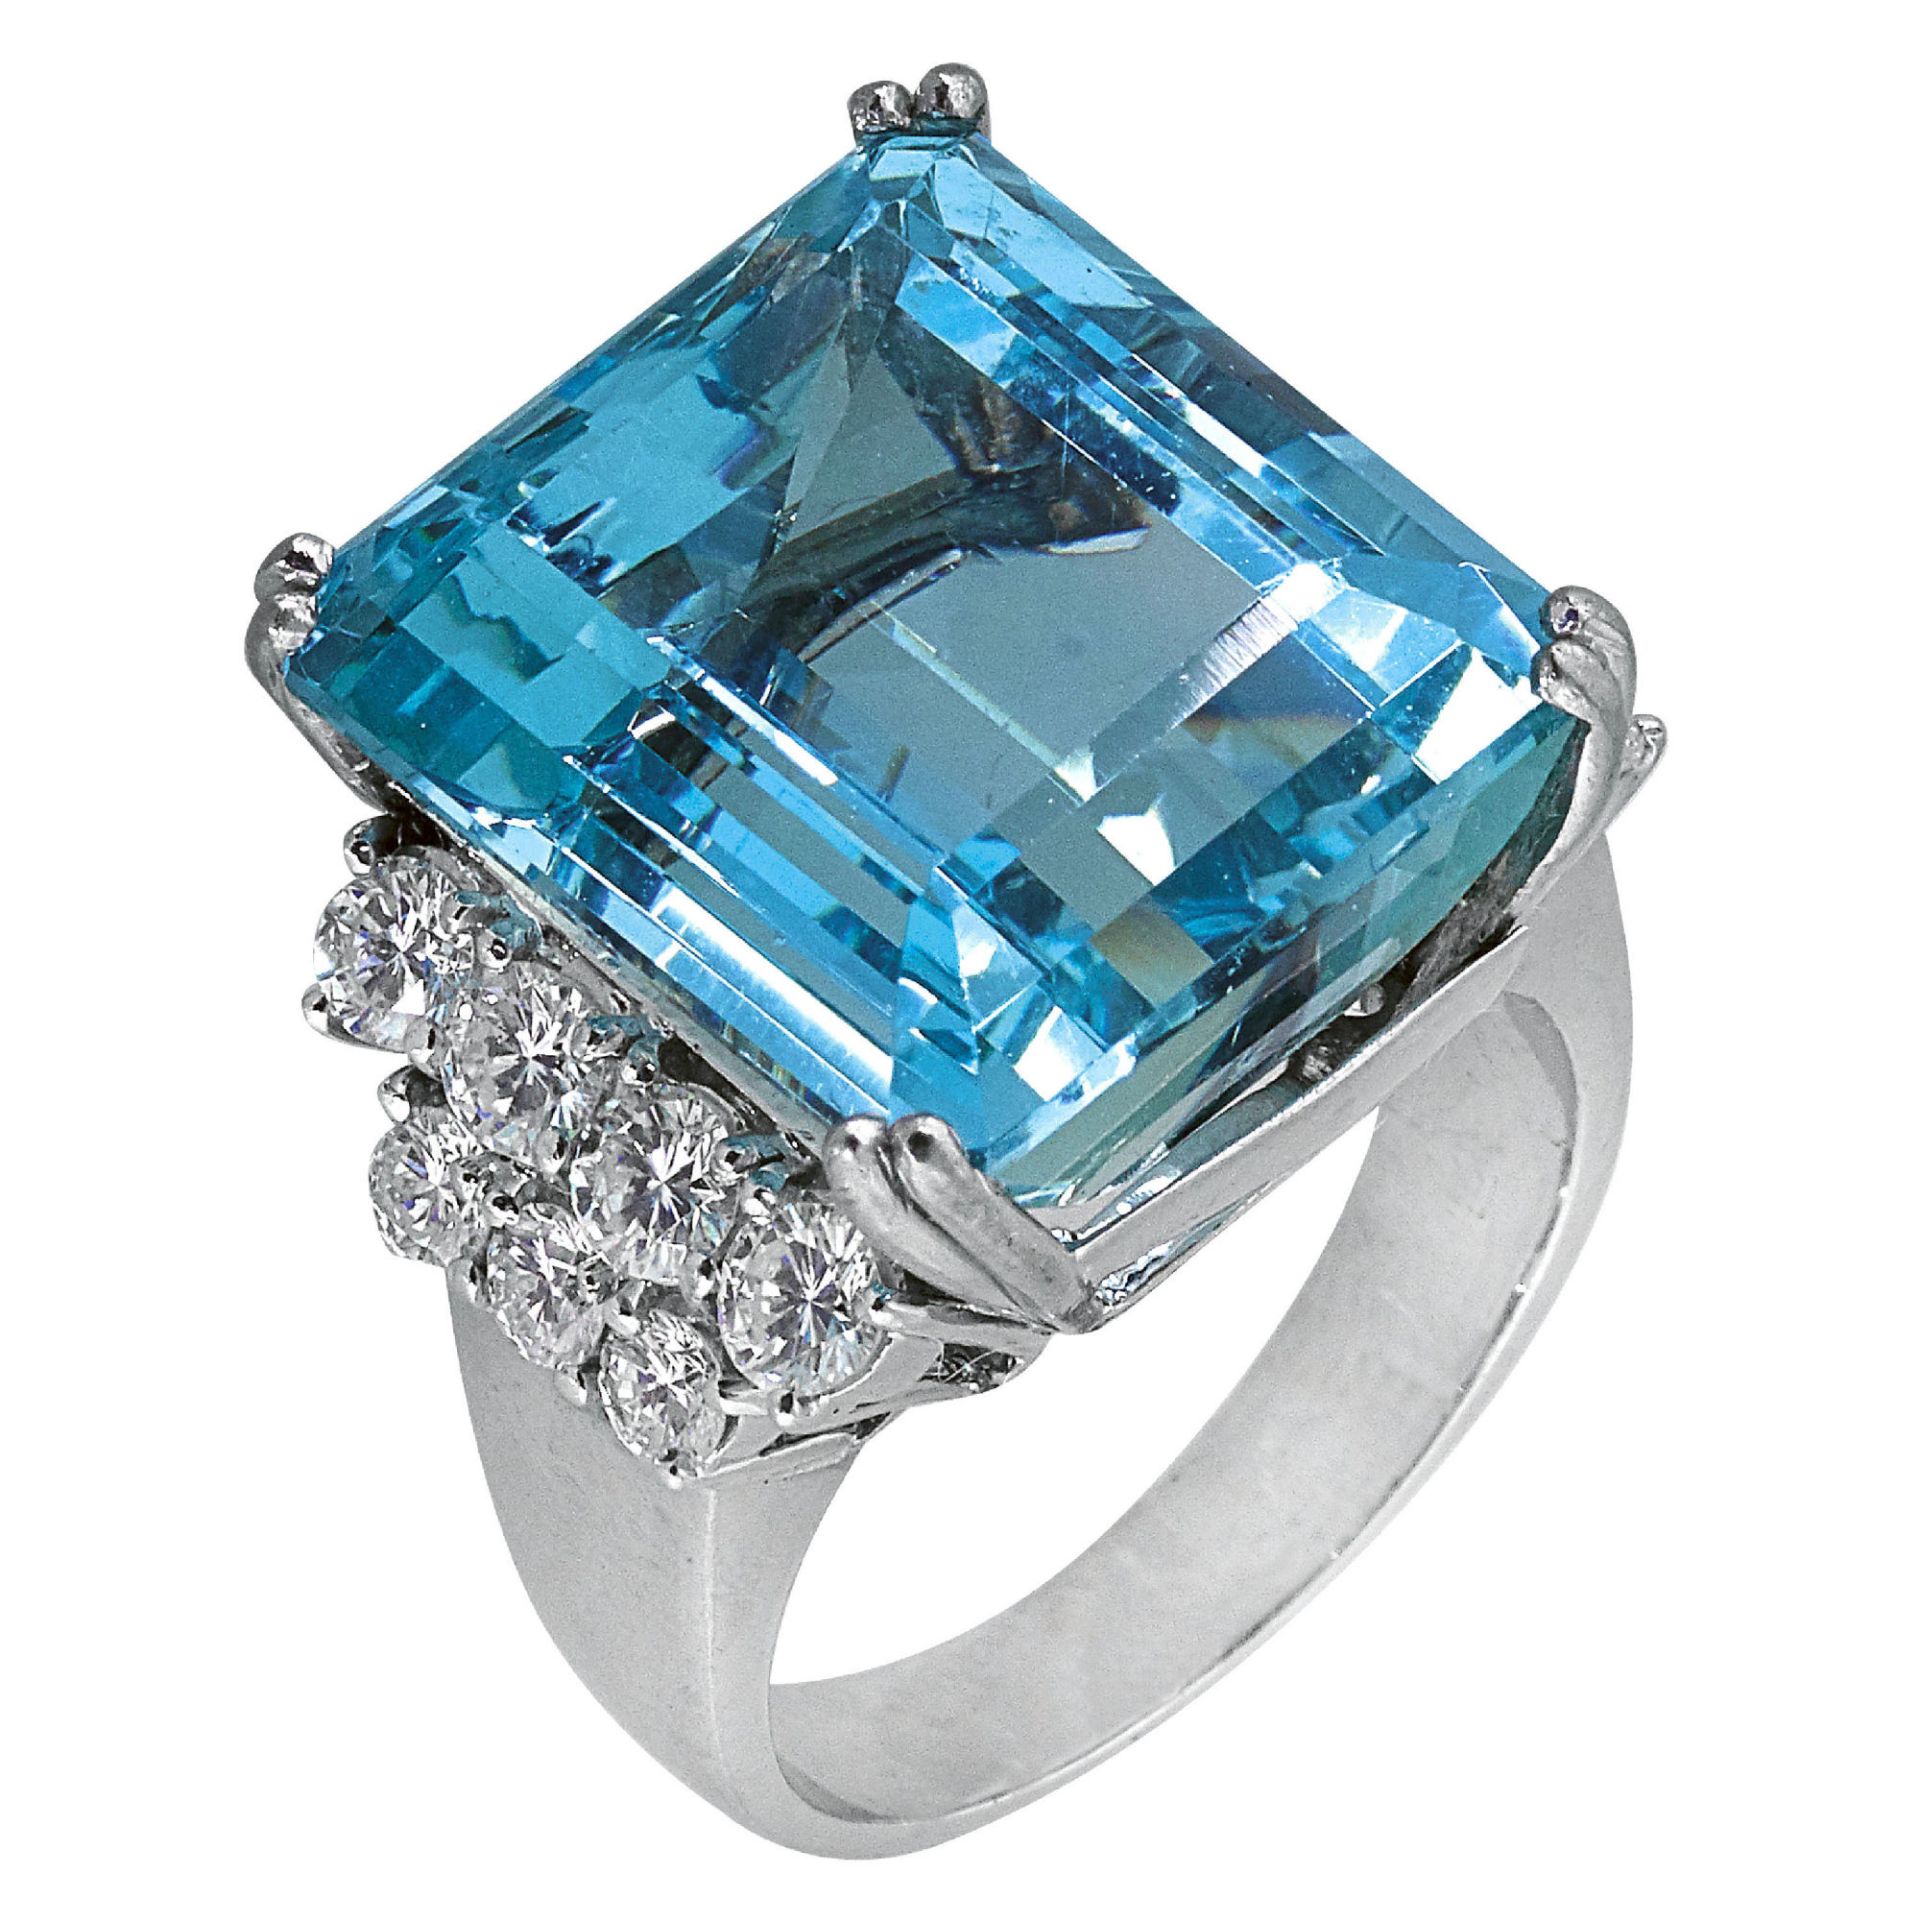 AQUAMARIN-BRILLANT-RING / Aquamarine-diamond ring